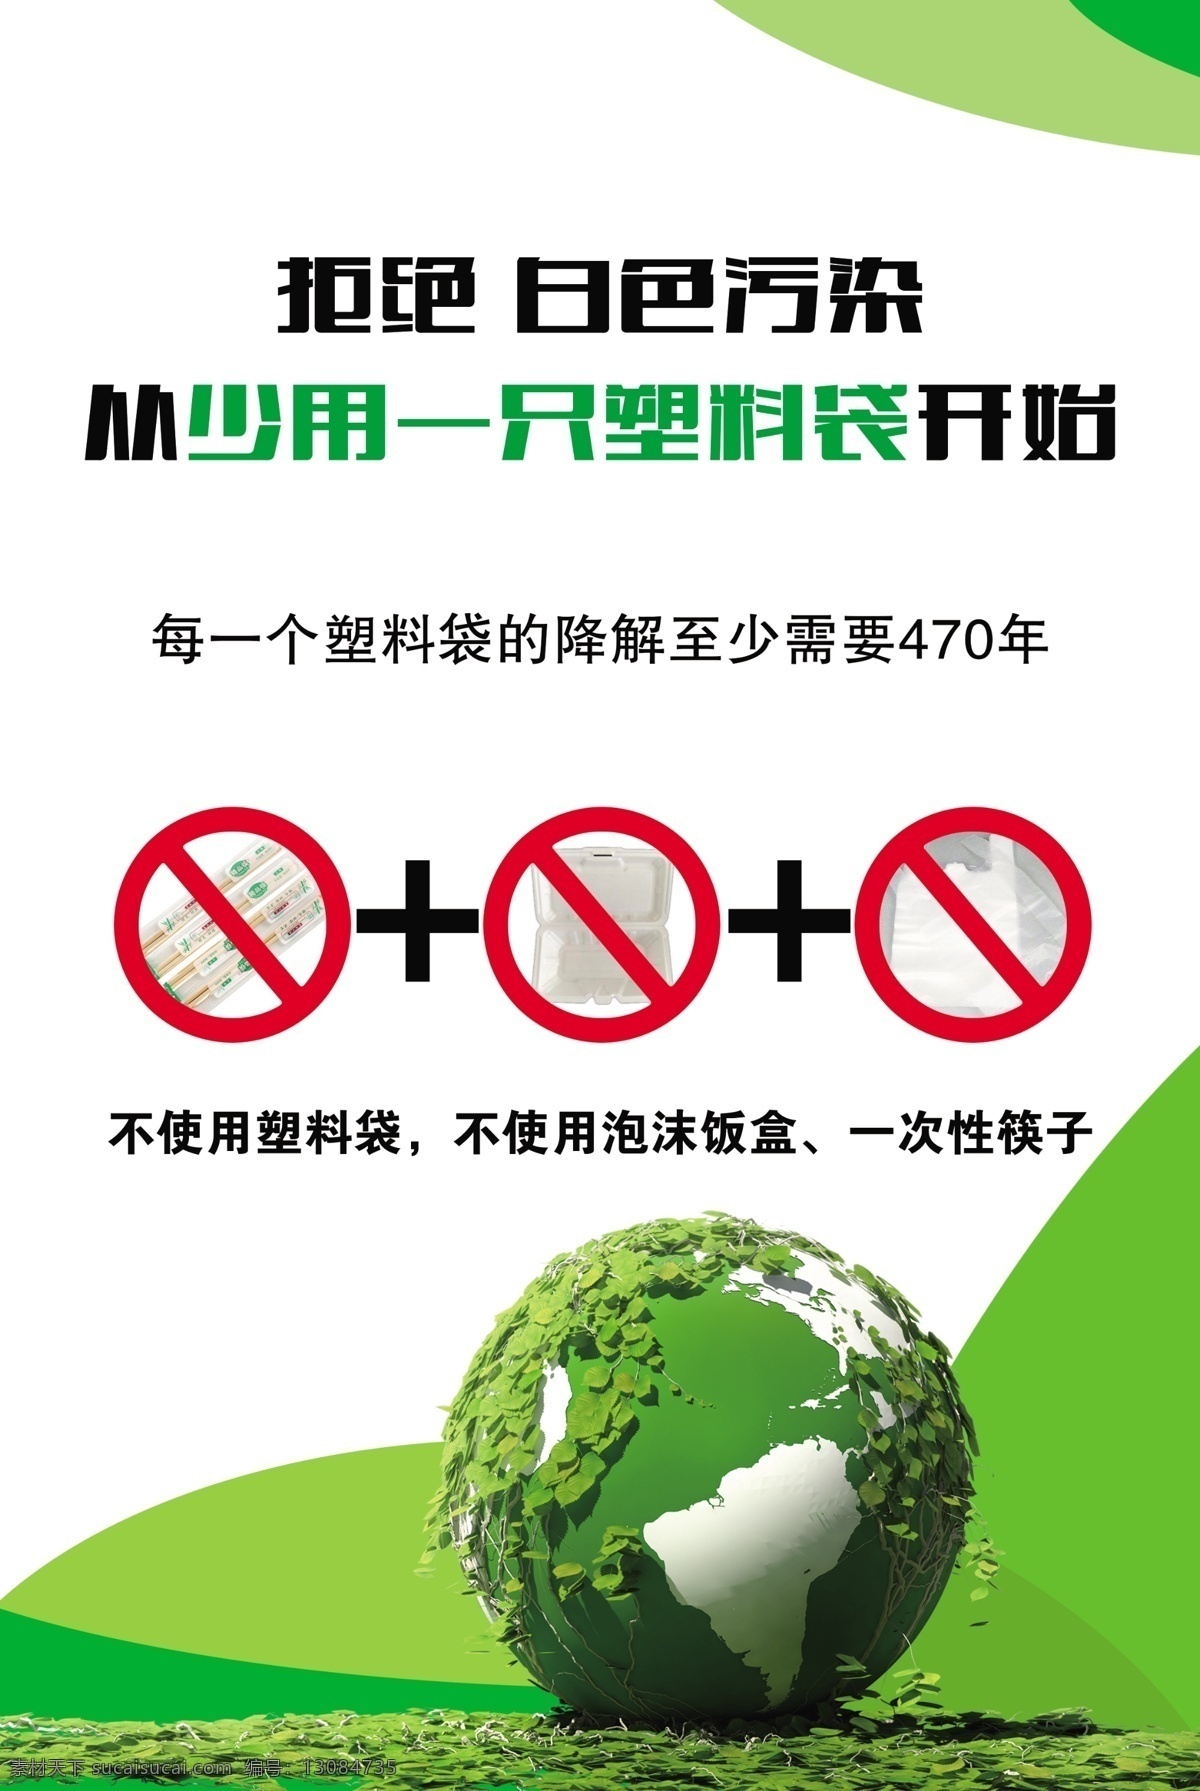 塑料 公益 广告 拒绝白色污染 塑料袋 泡沫盒 一次性筷子 绿色地球 公益广告